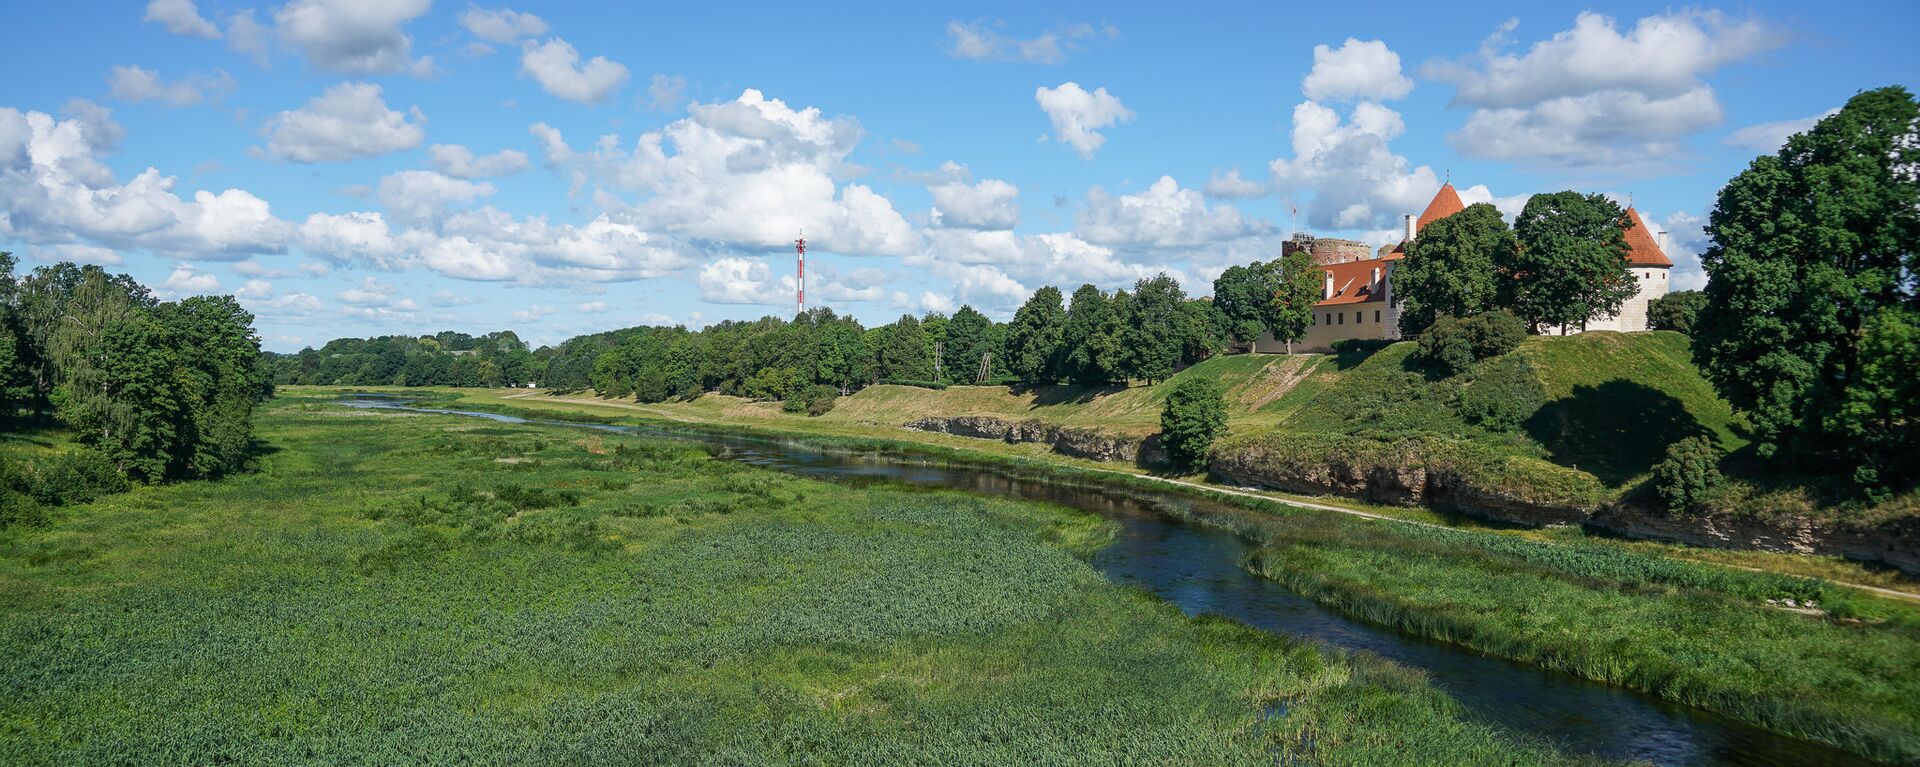 Река Мемеле и средневековый замок на холме в городе Бауска - Sputnik Латвия, 1920, 11.04.2020